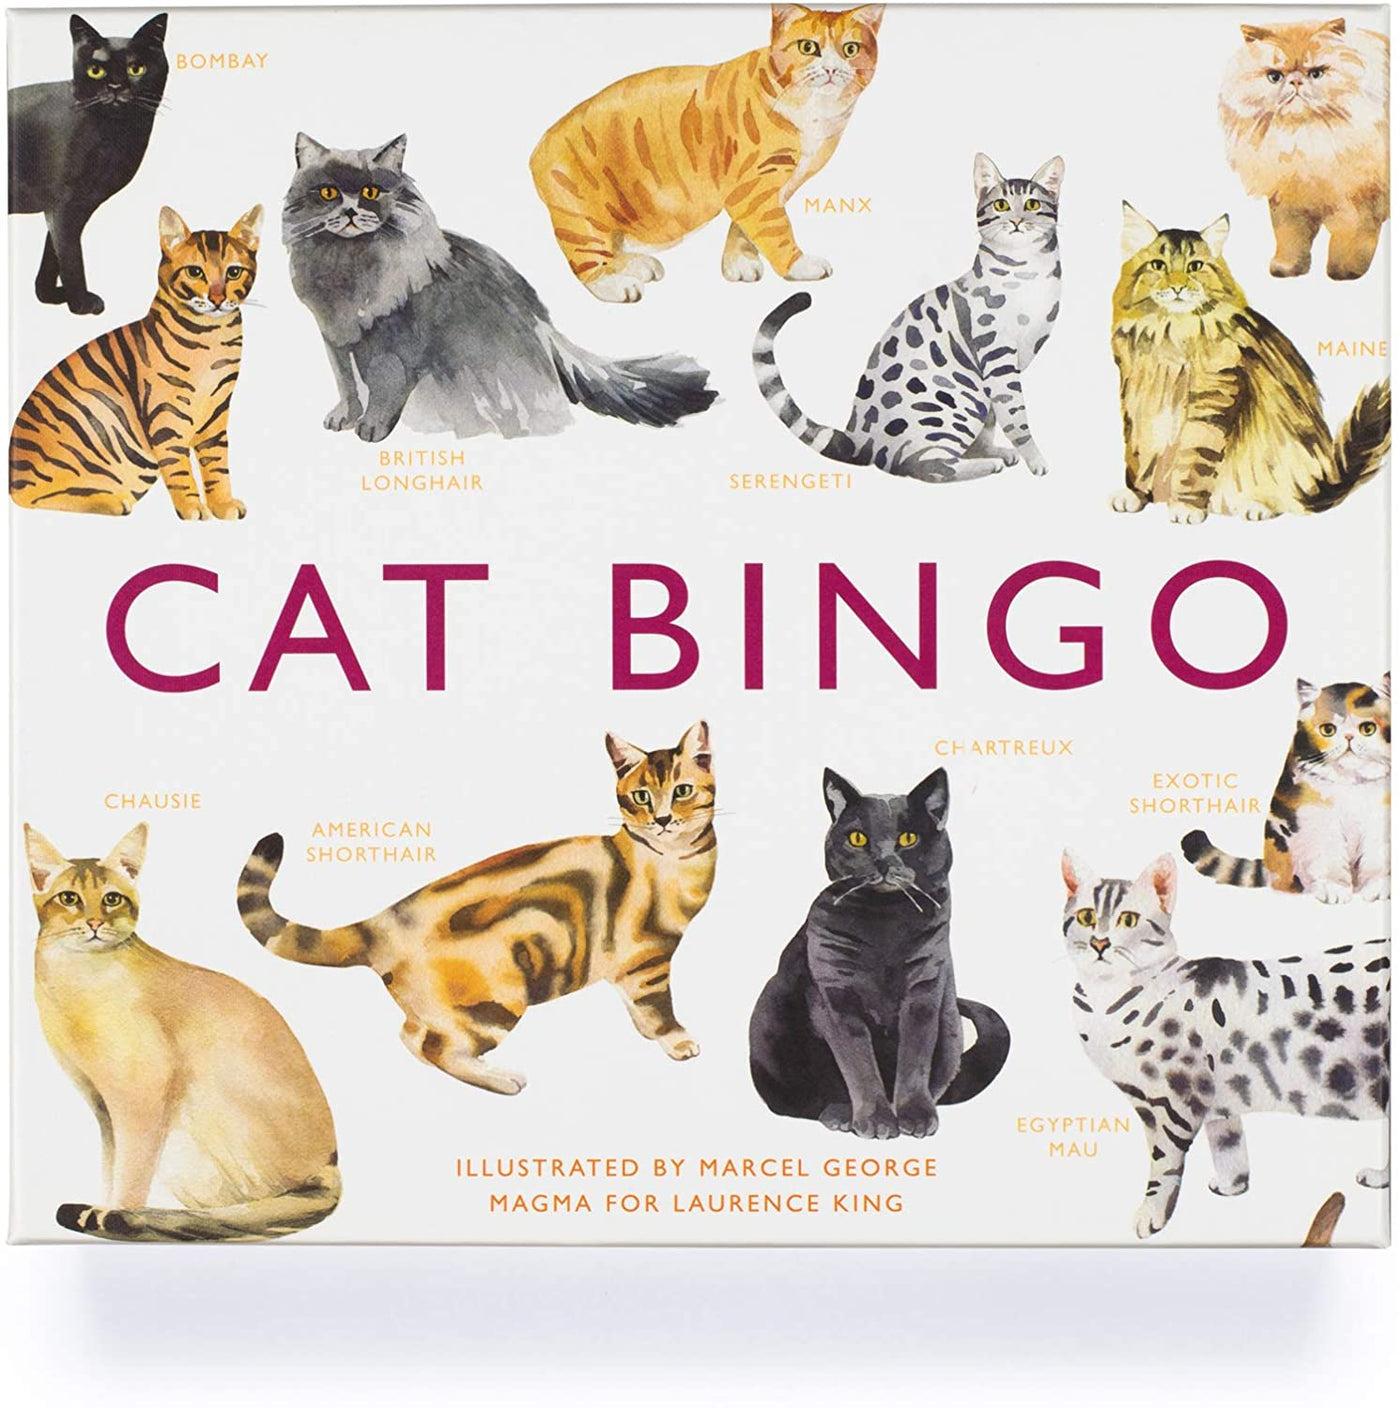 Cat Bingo Game